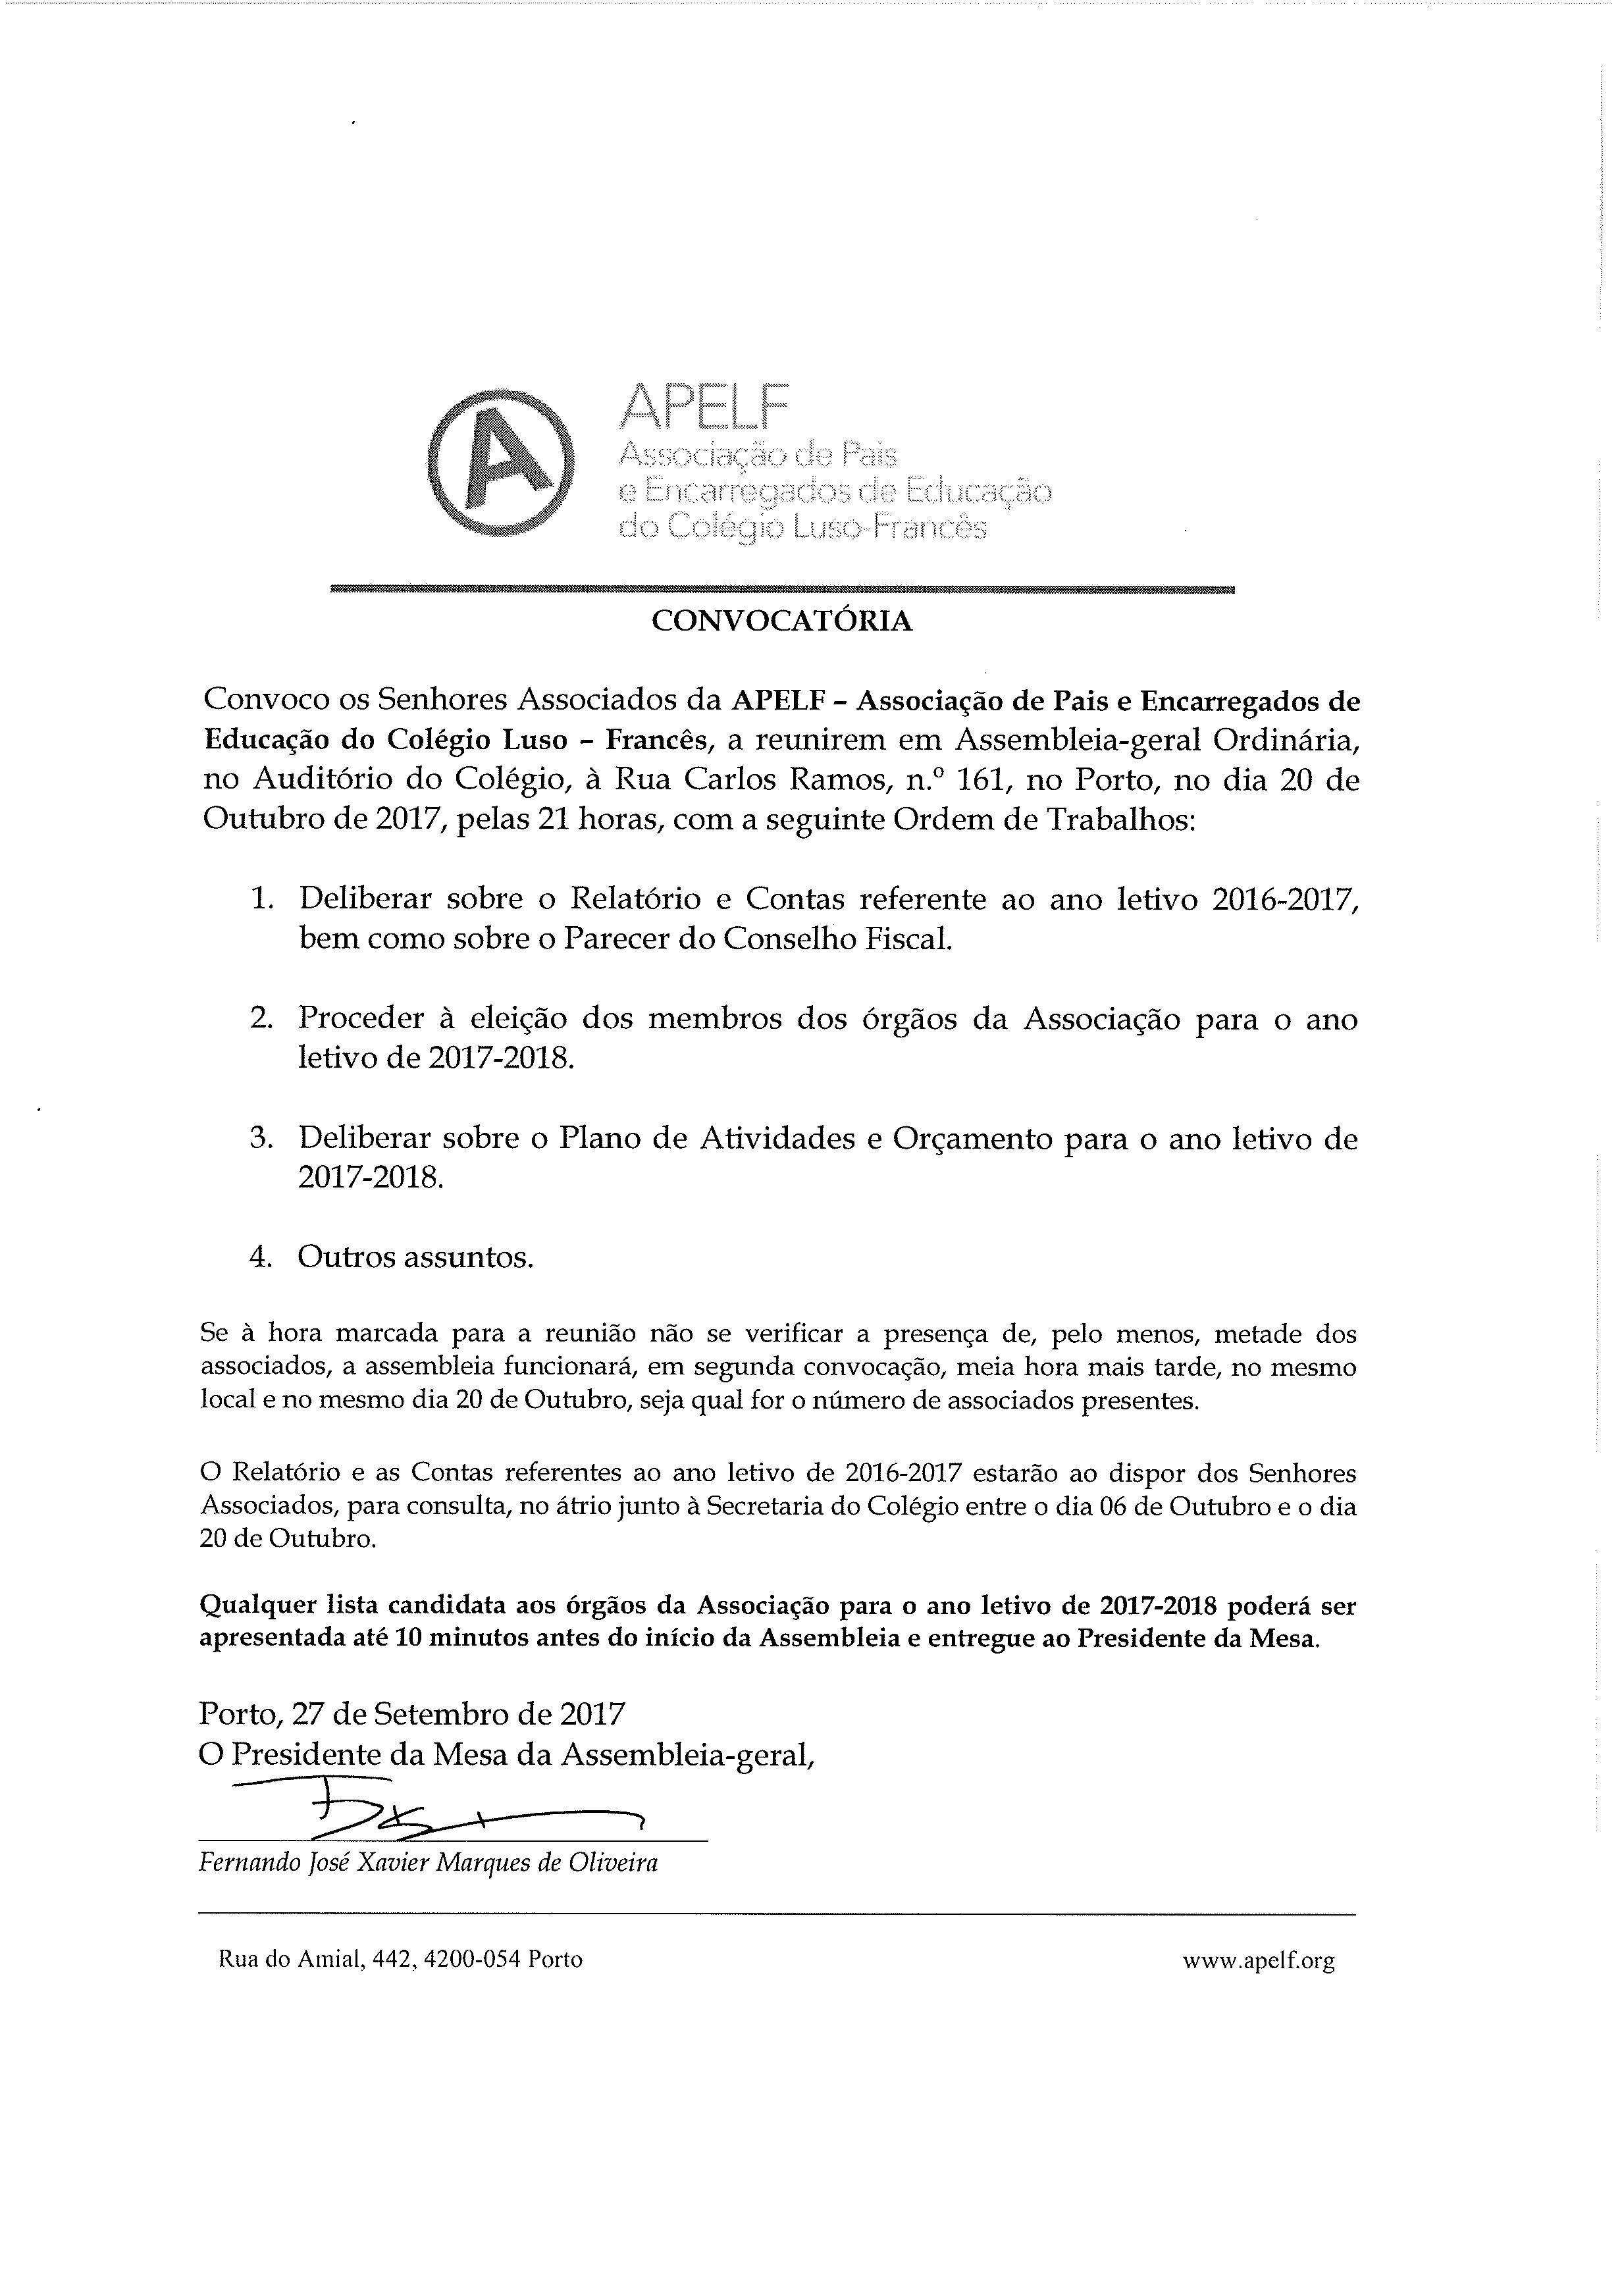 Convocatória de Assembleia Geral da APELF no CLF para o dia 20 de Outubro de 2017 pelas 21H00